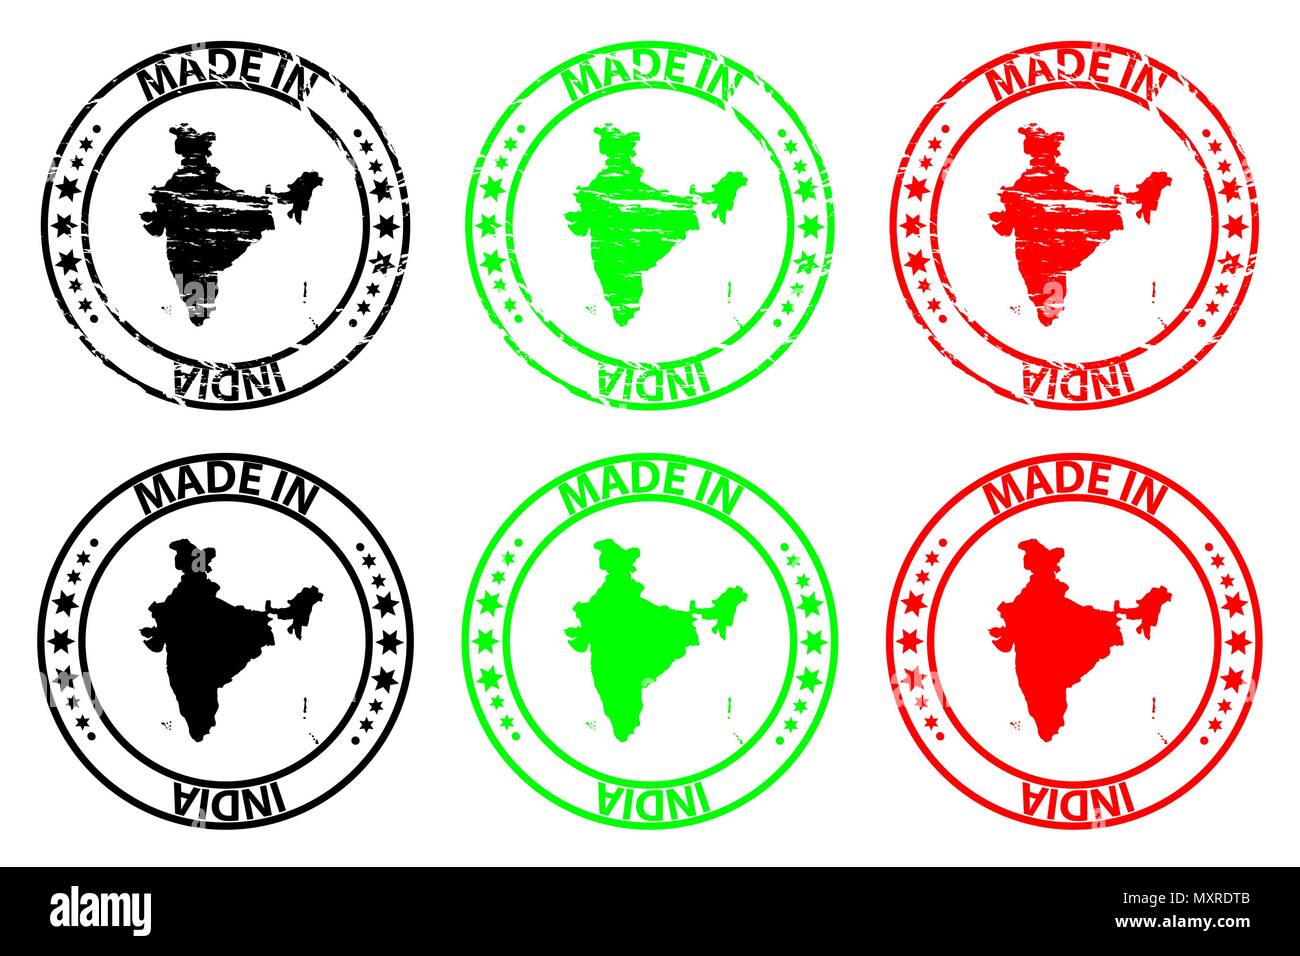 In Indien - Stempel - Vektor, Republik Indien Karte Muster - Schwarz, Grün und Rot Stock Vektor